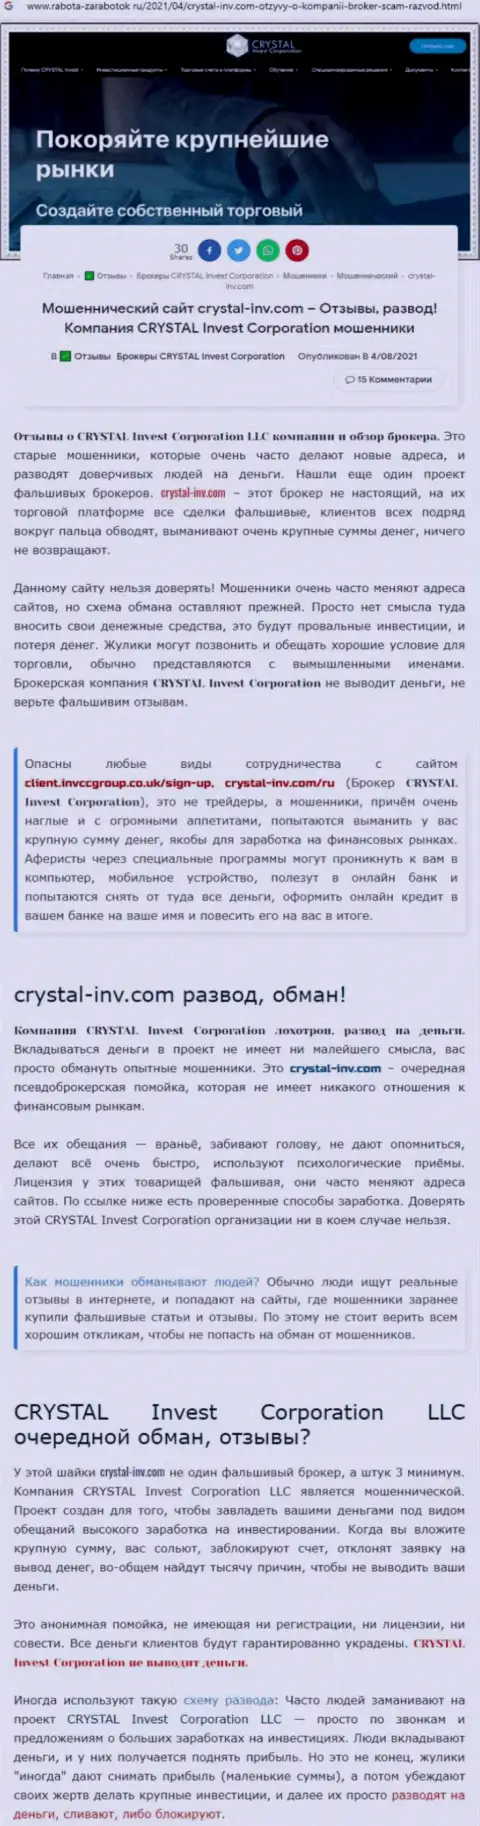 Материал, выводящий на чистую воду компанию CrystalInvest, который позаимствован с сайта с обзорами различных контор